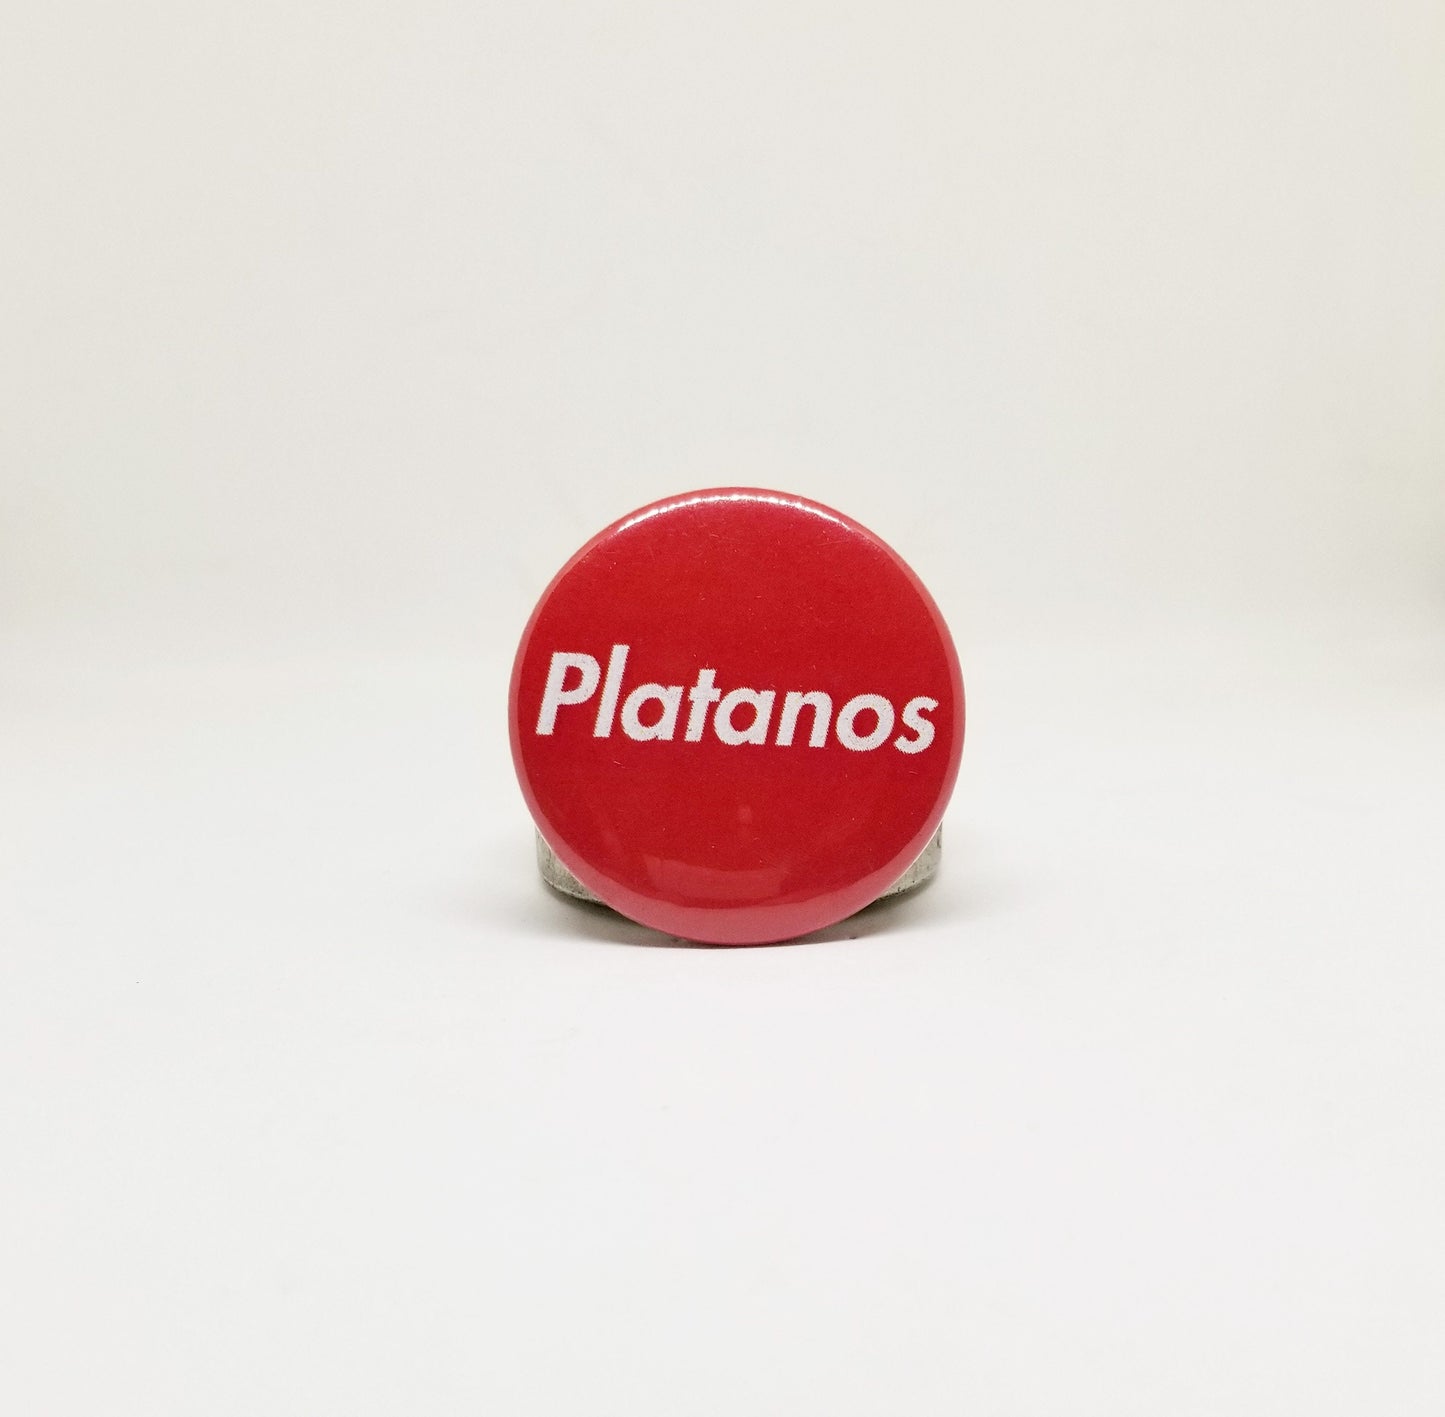 Platanos button pin